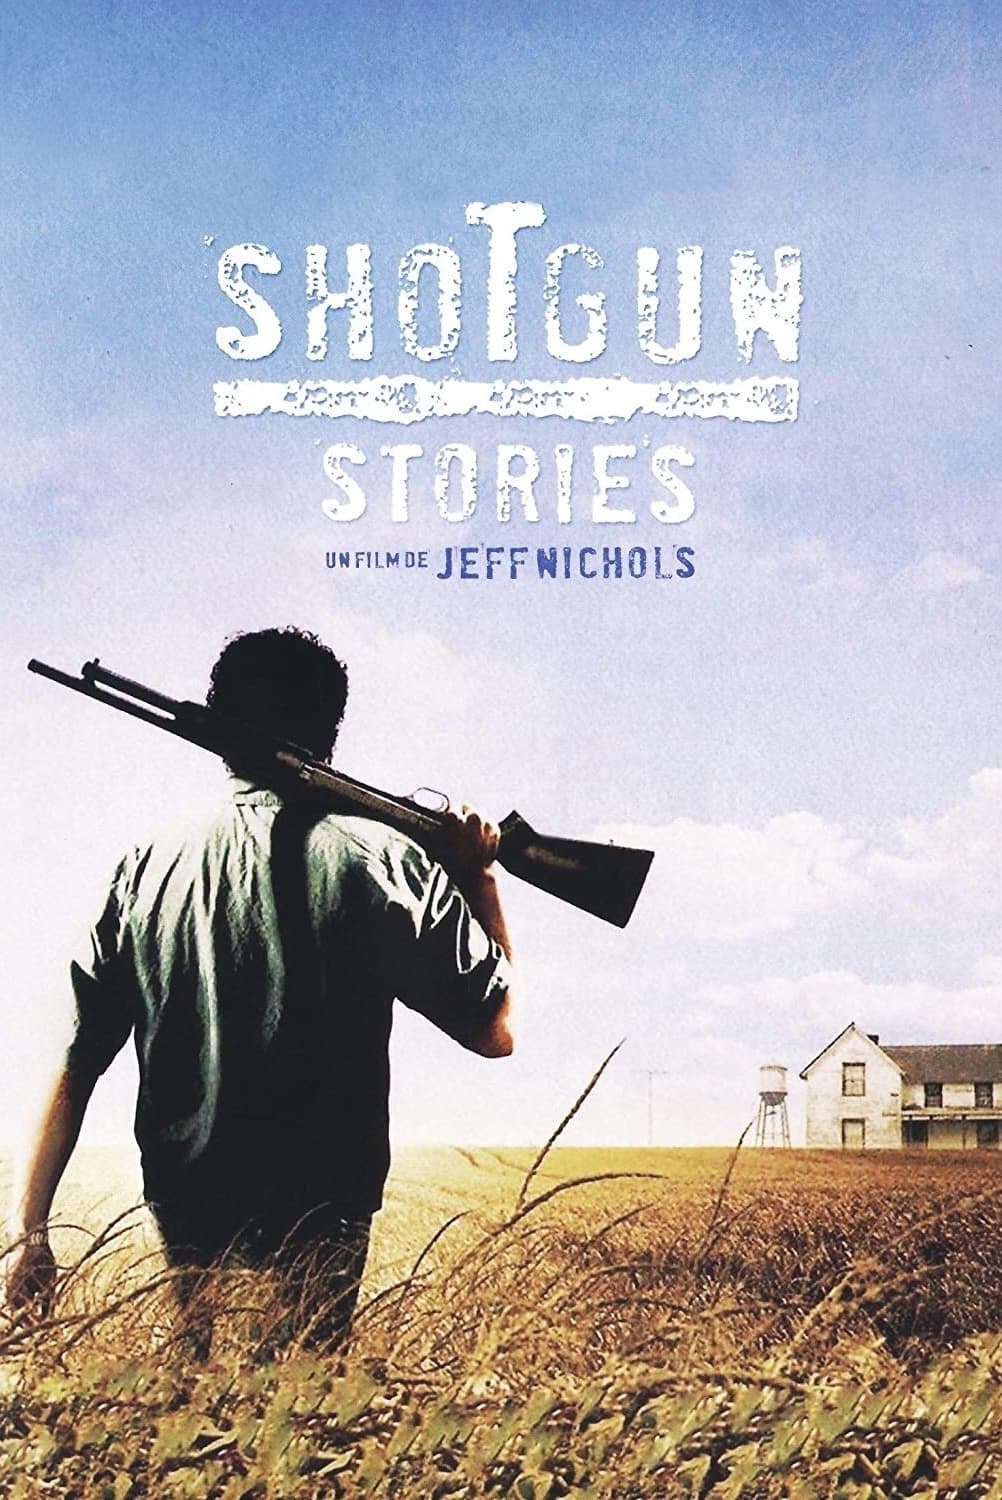 Shotgun Stories est-il disponible sur Netflix ou autre ?